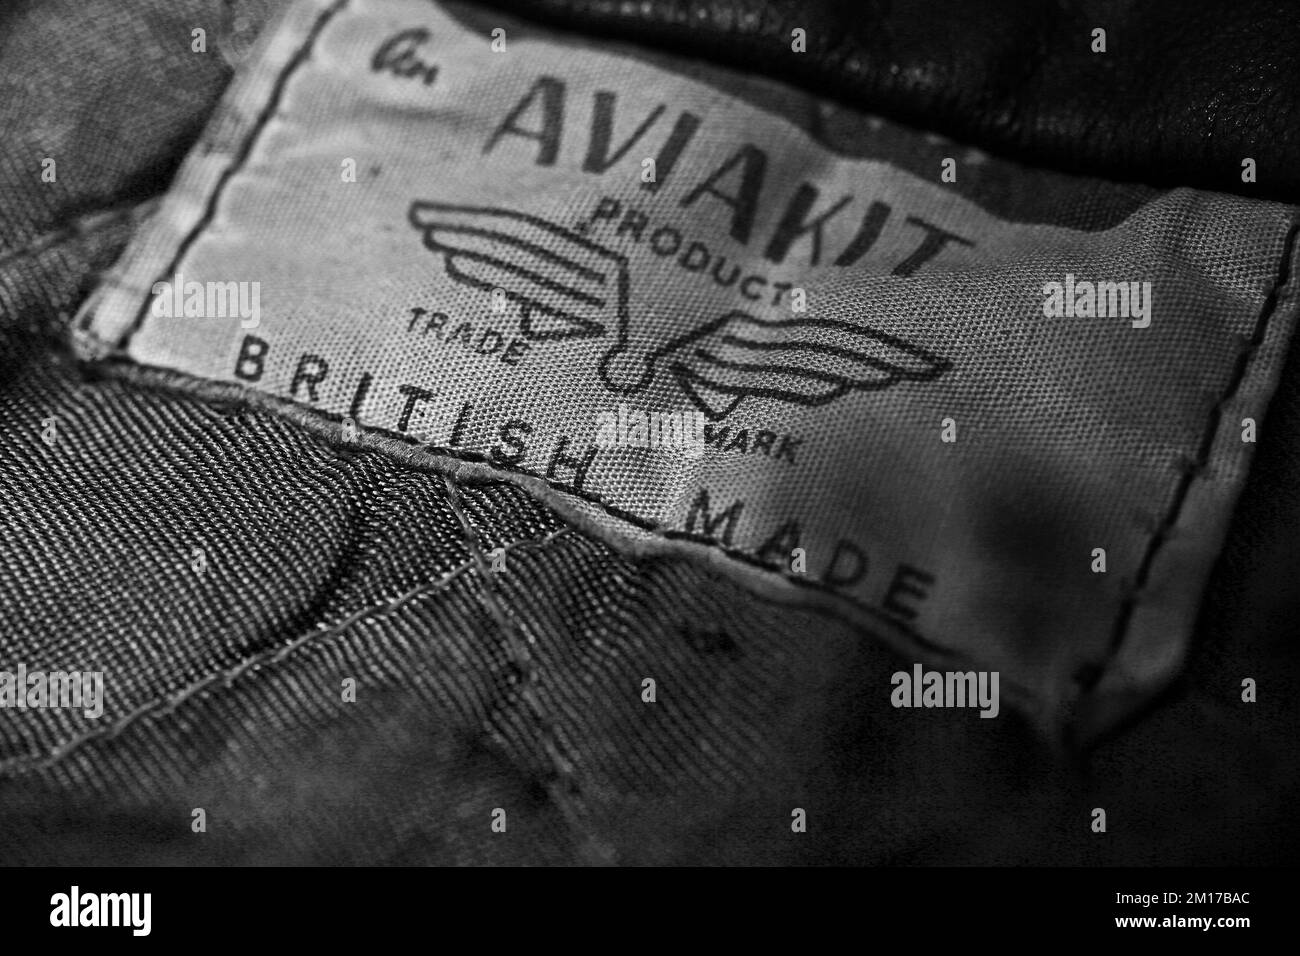 Etiqueta vintage Aviakit en una chaqueta de leathers Lewis. Foto de stock